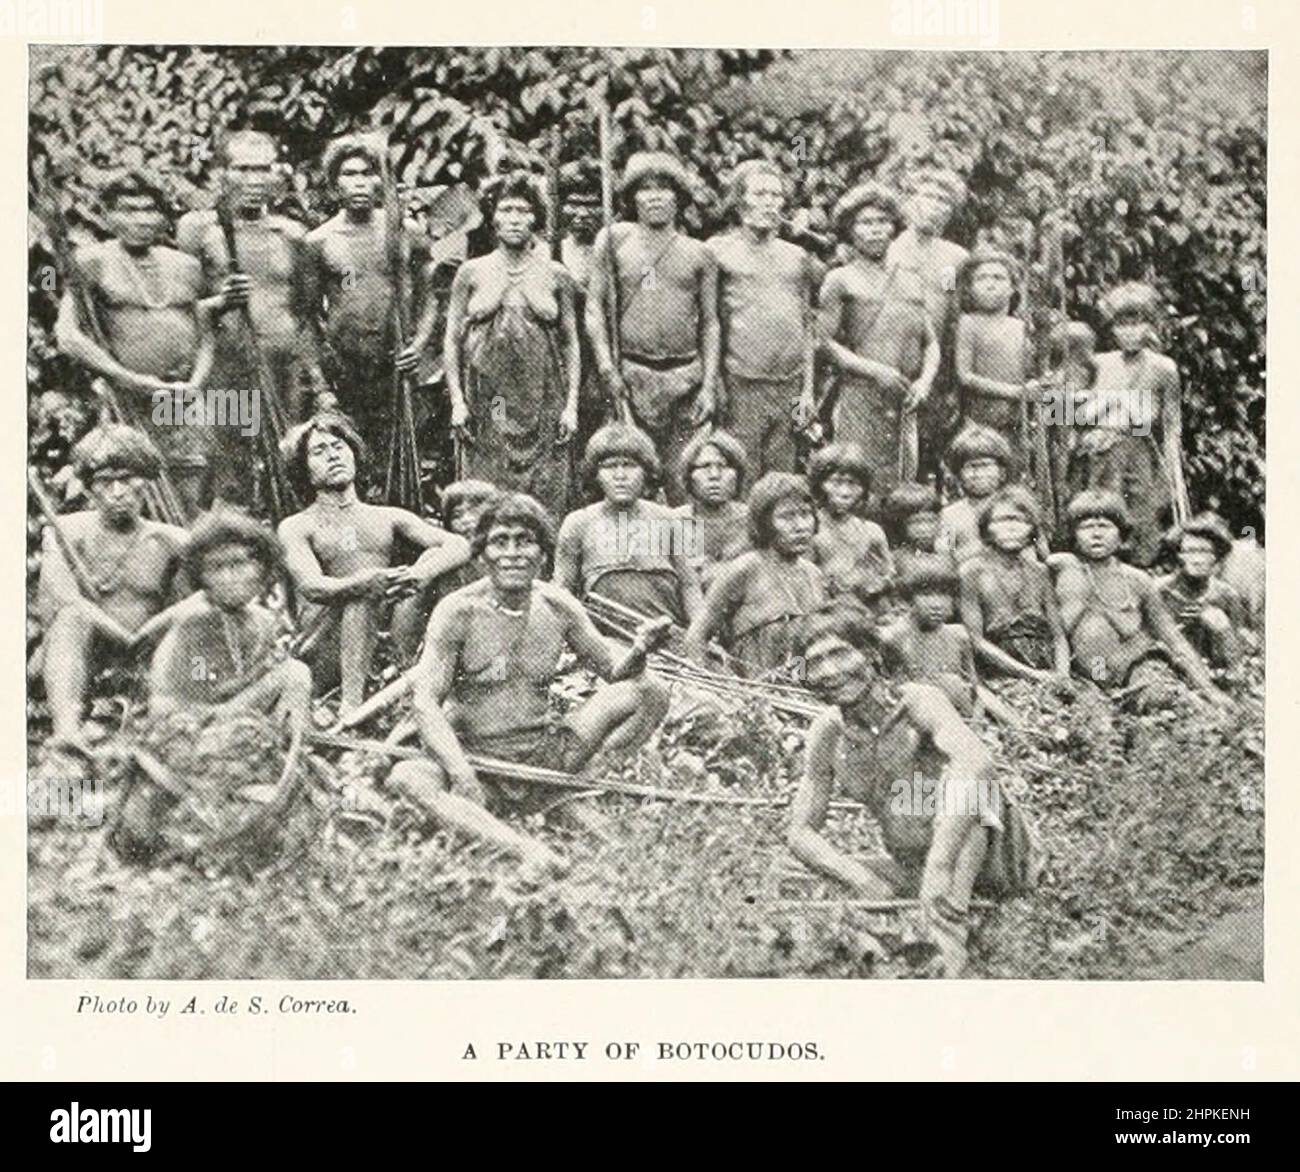 Un partito di Botocudos gli Aimoré (Aymore, Aimboré) sono uno dei diversi popoli sudamericani del Brasile orientale chiamato Botocudo in portoghese (da botoque, un tappo), in allusione ai dischi di legno o tembetás indossati nelle loro labbra e orecchie. Alcuni si chiamavano NAC-nanuk o NAC-poruk, il che significa 'suon del suolo'. L'ultimo gruppo di Aimoré a mantenere la propria lingua è il Krenak. Gli altri popoli chiamati Botocudo furono lo Xokleng e lo Xeta. Dal libro The Living Races of Mumann; Volume 2 di Henry Neville Hutchinson, pubblicato a Londra nel 1901 da Hutchinson & co Foto Stock